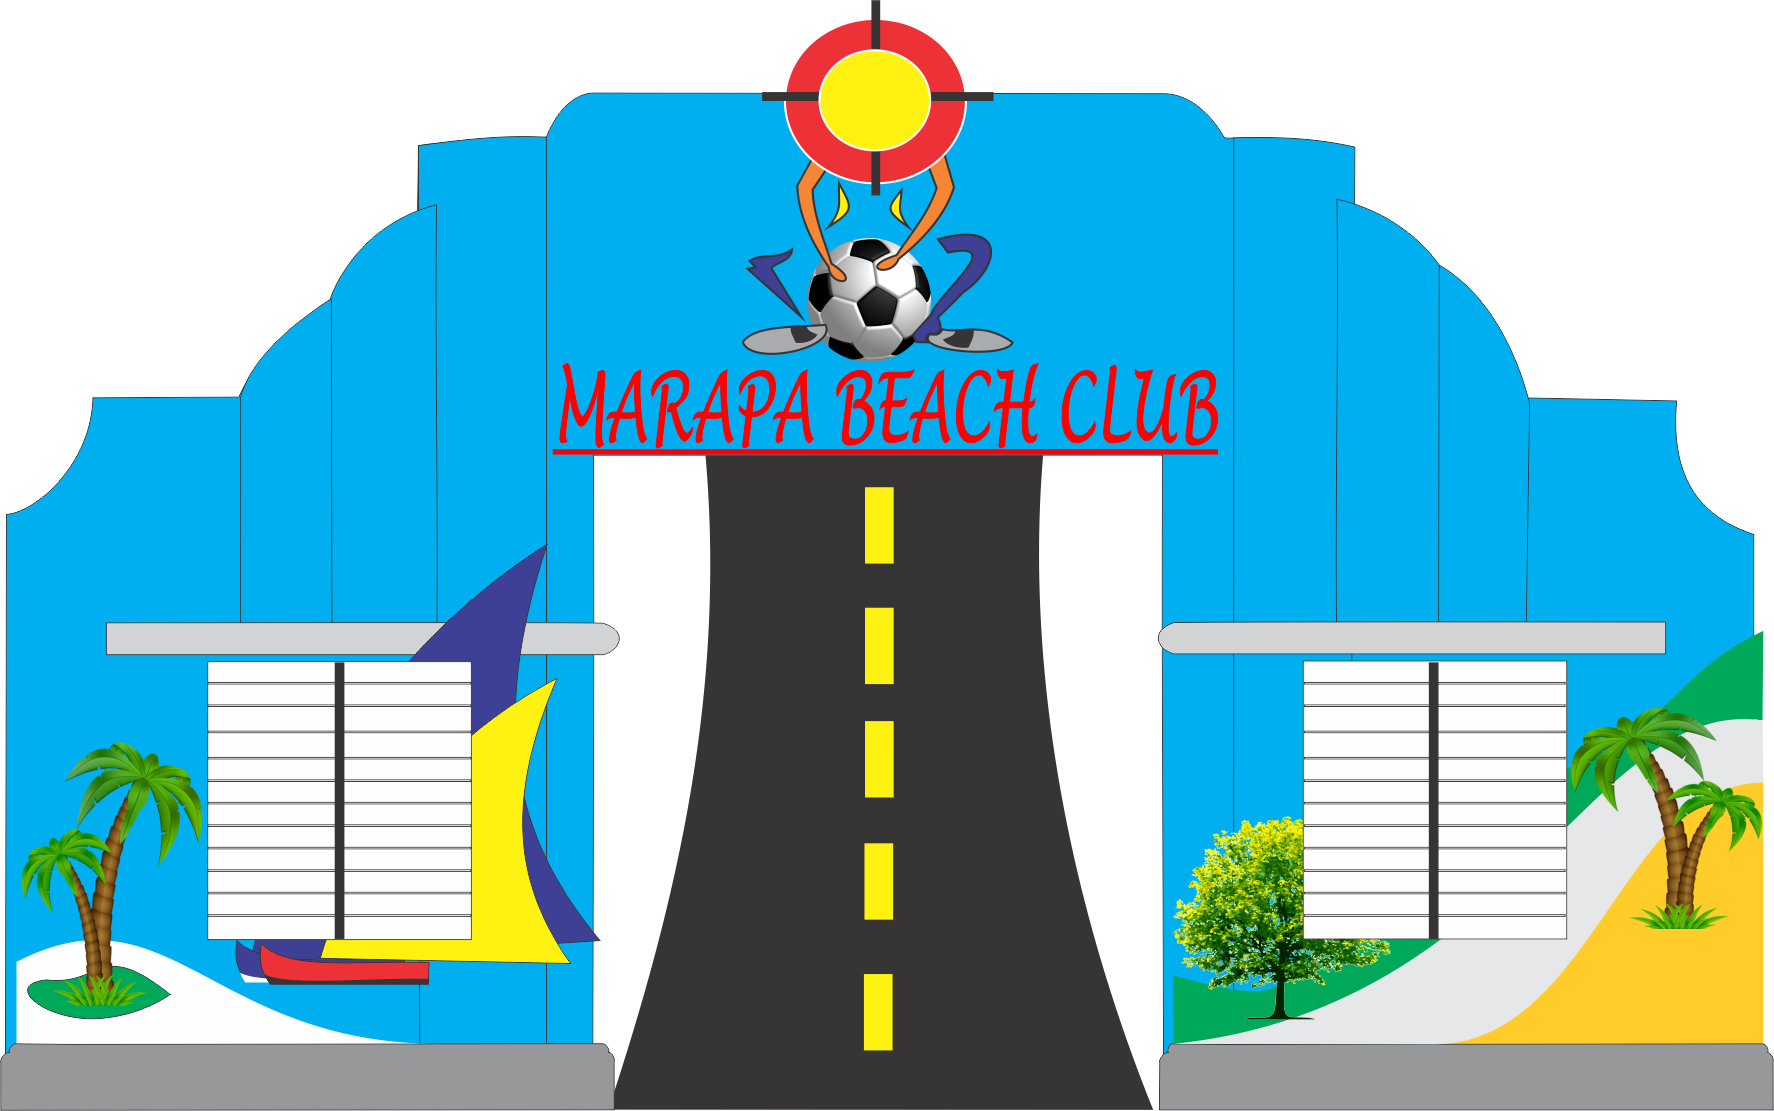 MARAPA BEACH CLUB